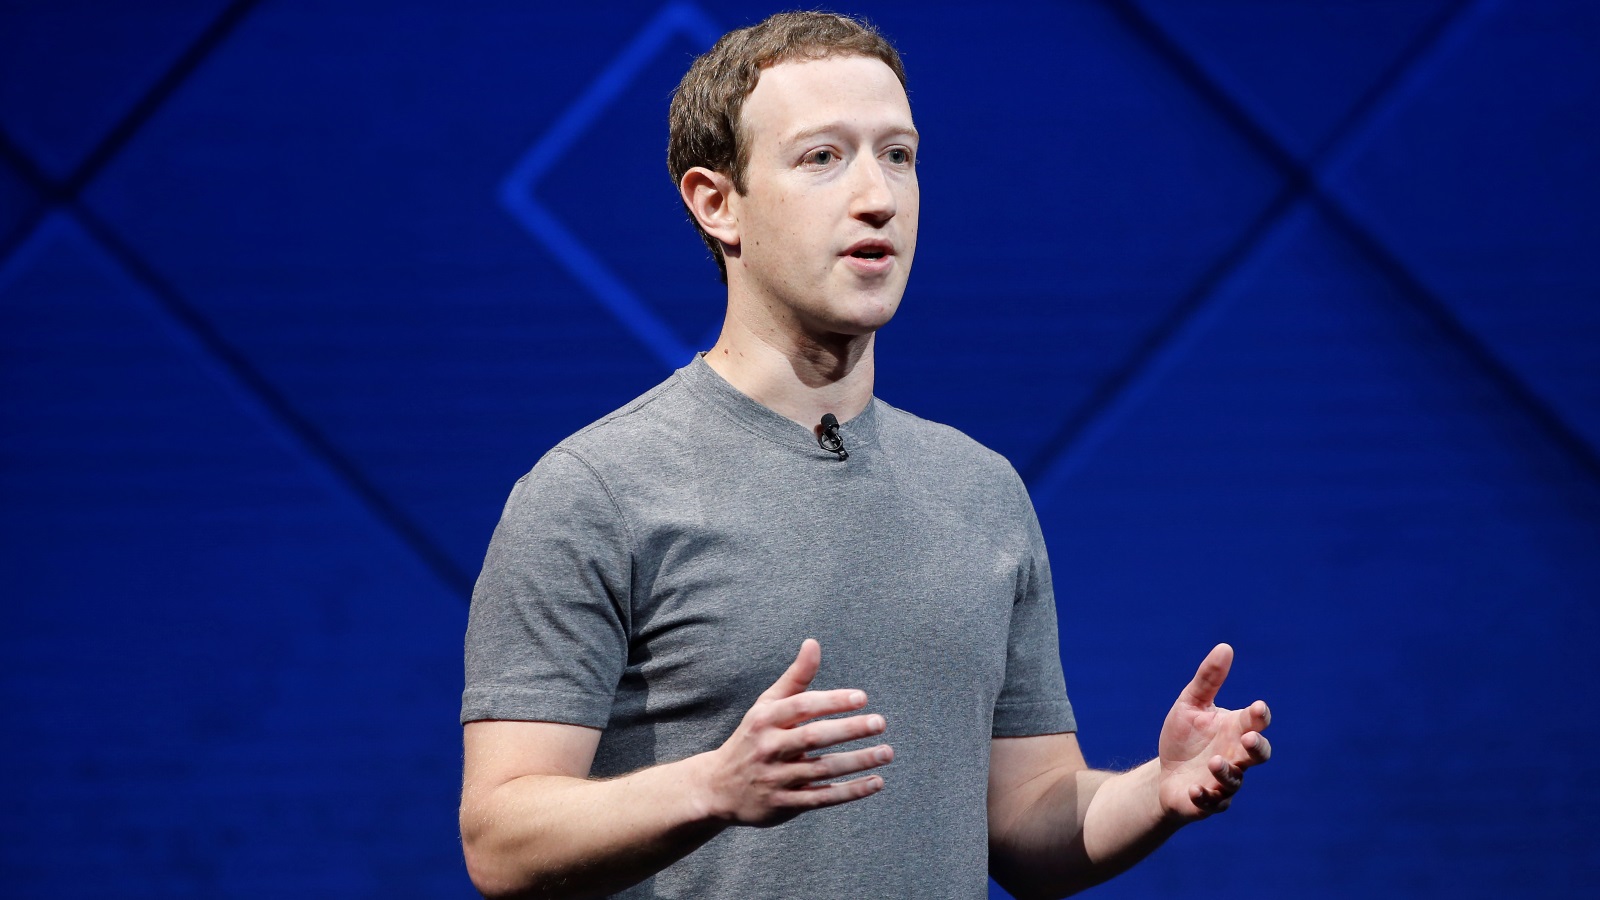 زوكربيرغ قال إن هدف التغيير هو ضمان أن الوقت الذي يمضيه المستخدم على فيسبوك سيُقضى بأفضل صورة (رويترز)